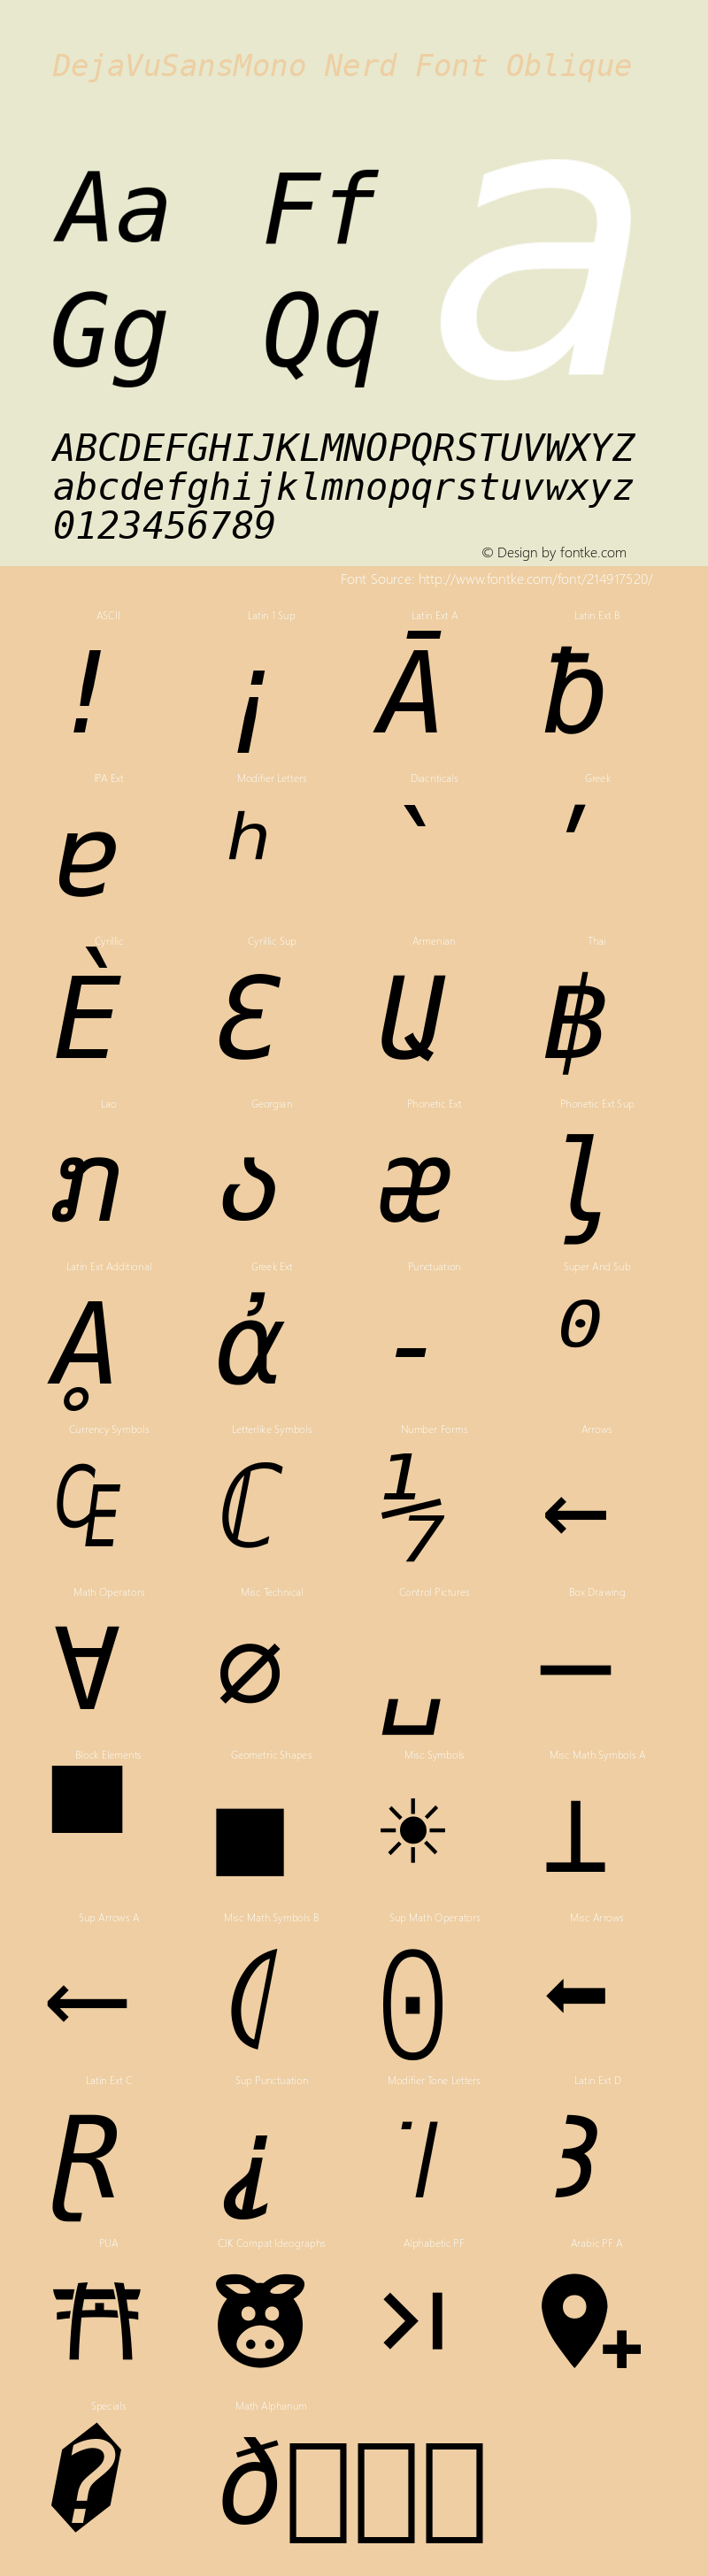 DejaVu Sans Mono Oblique Nerd Font Complete Version 2.37;Nerd Fonts 2.1.0图片样张